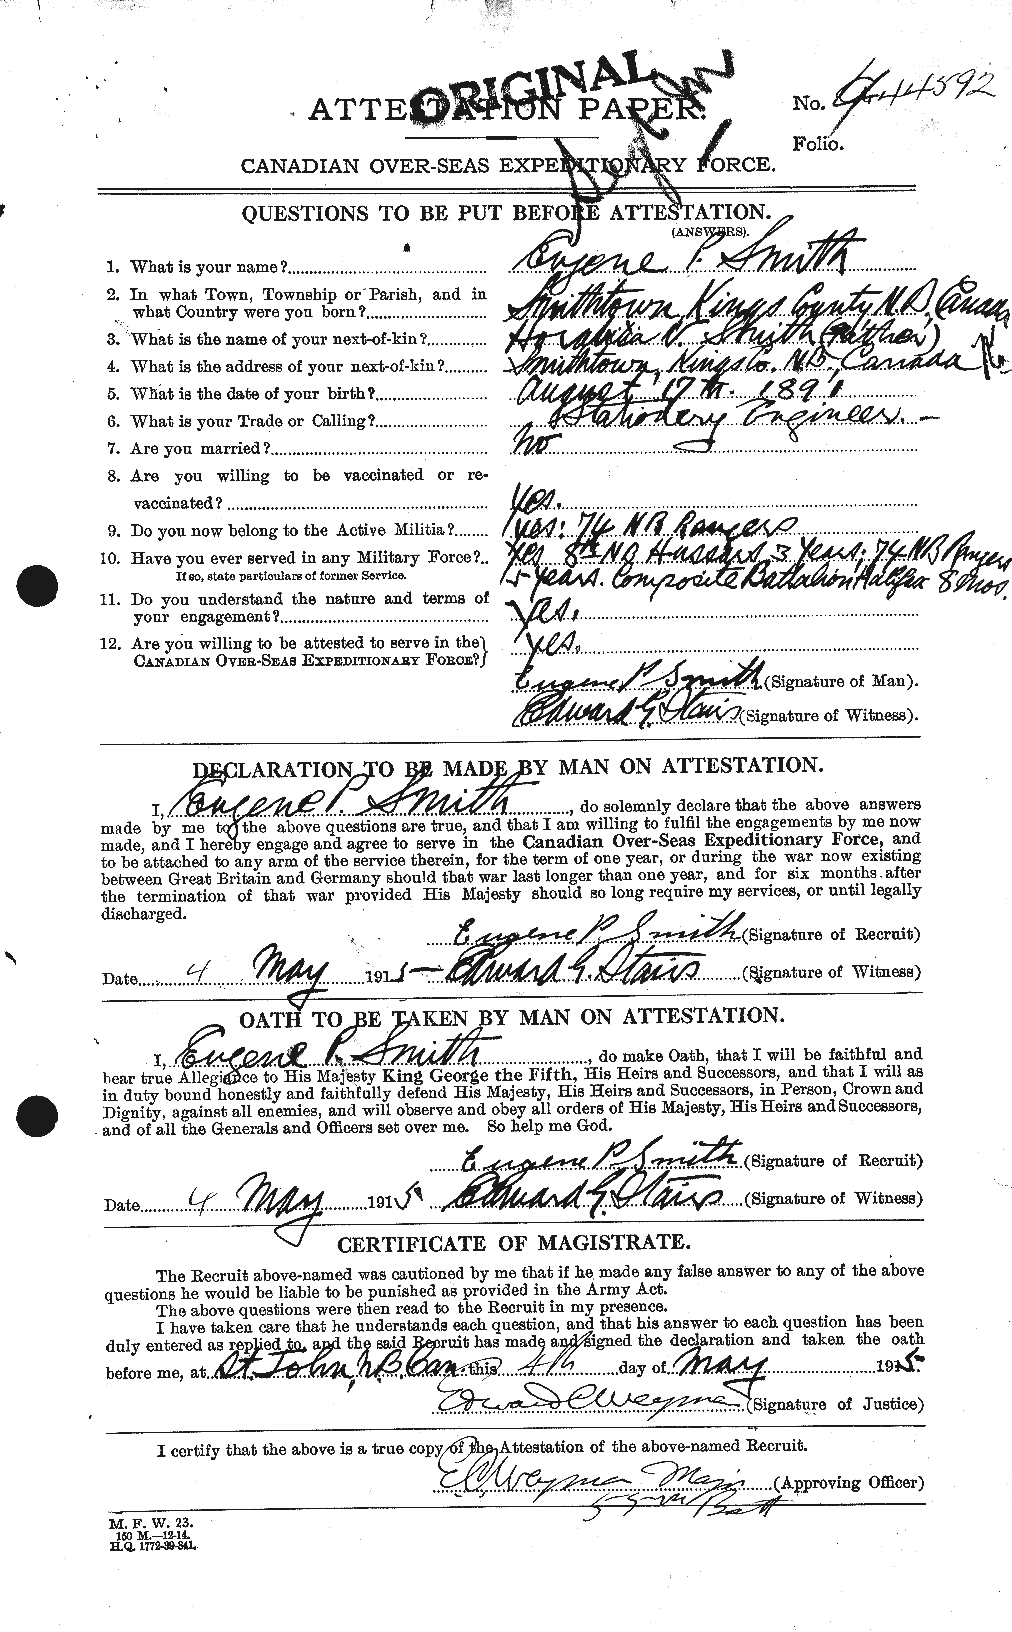 Dossiers du Personnel de la Première Guerre mondiale - CEC 621235a